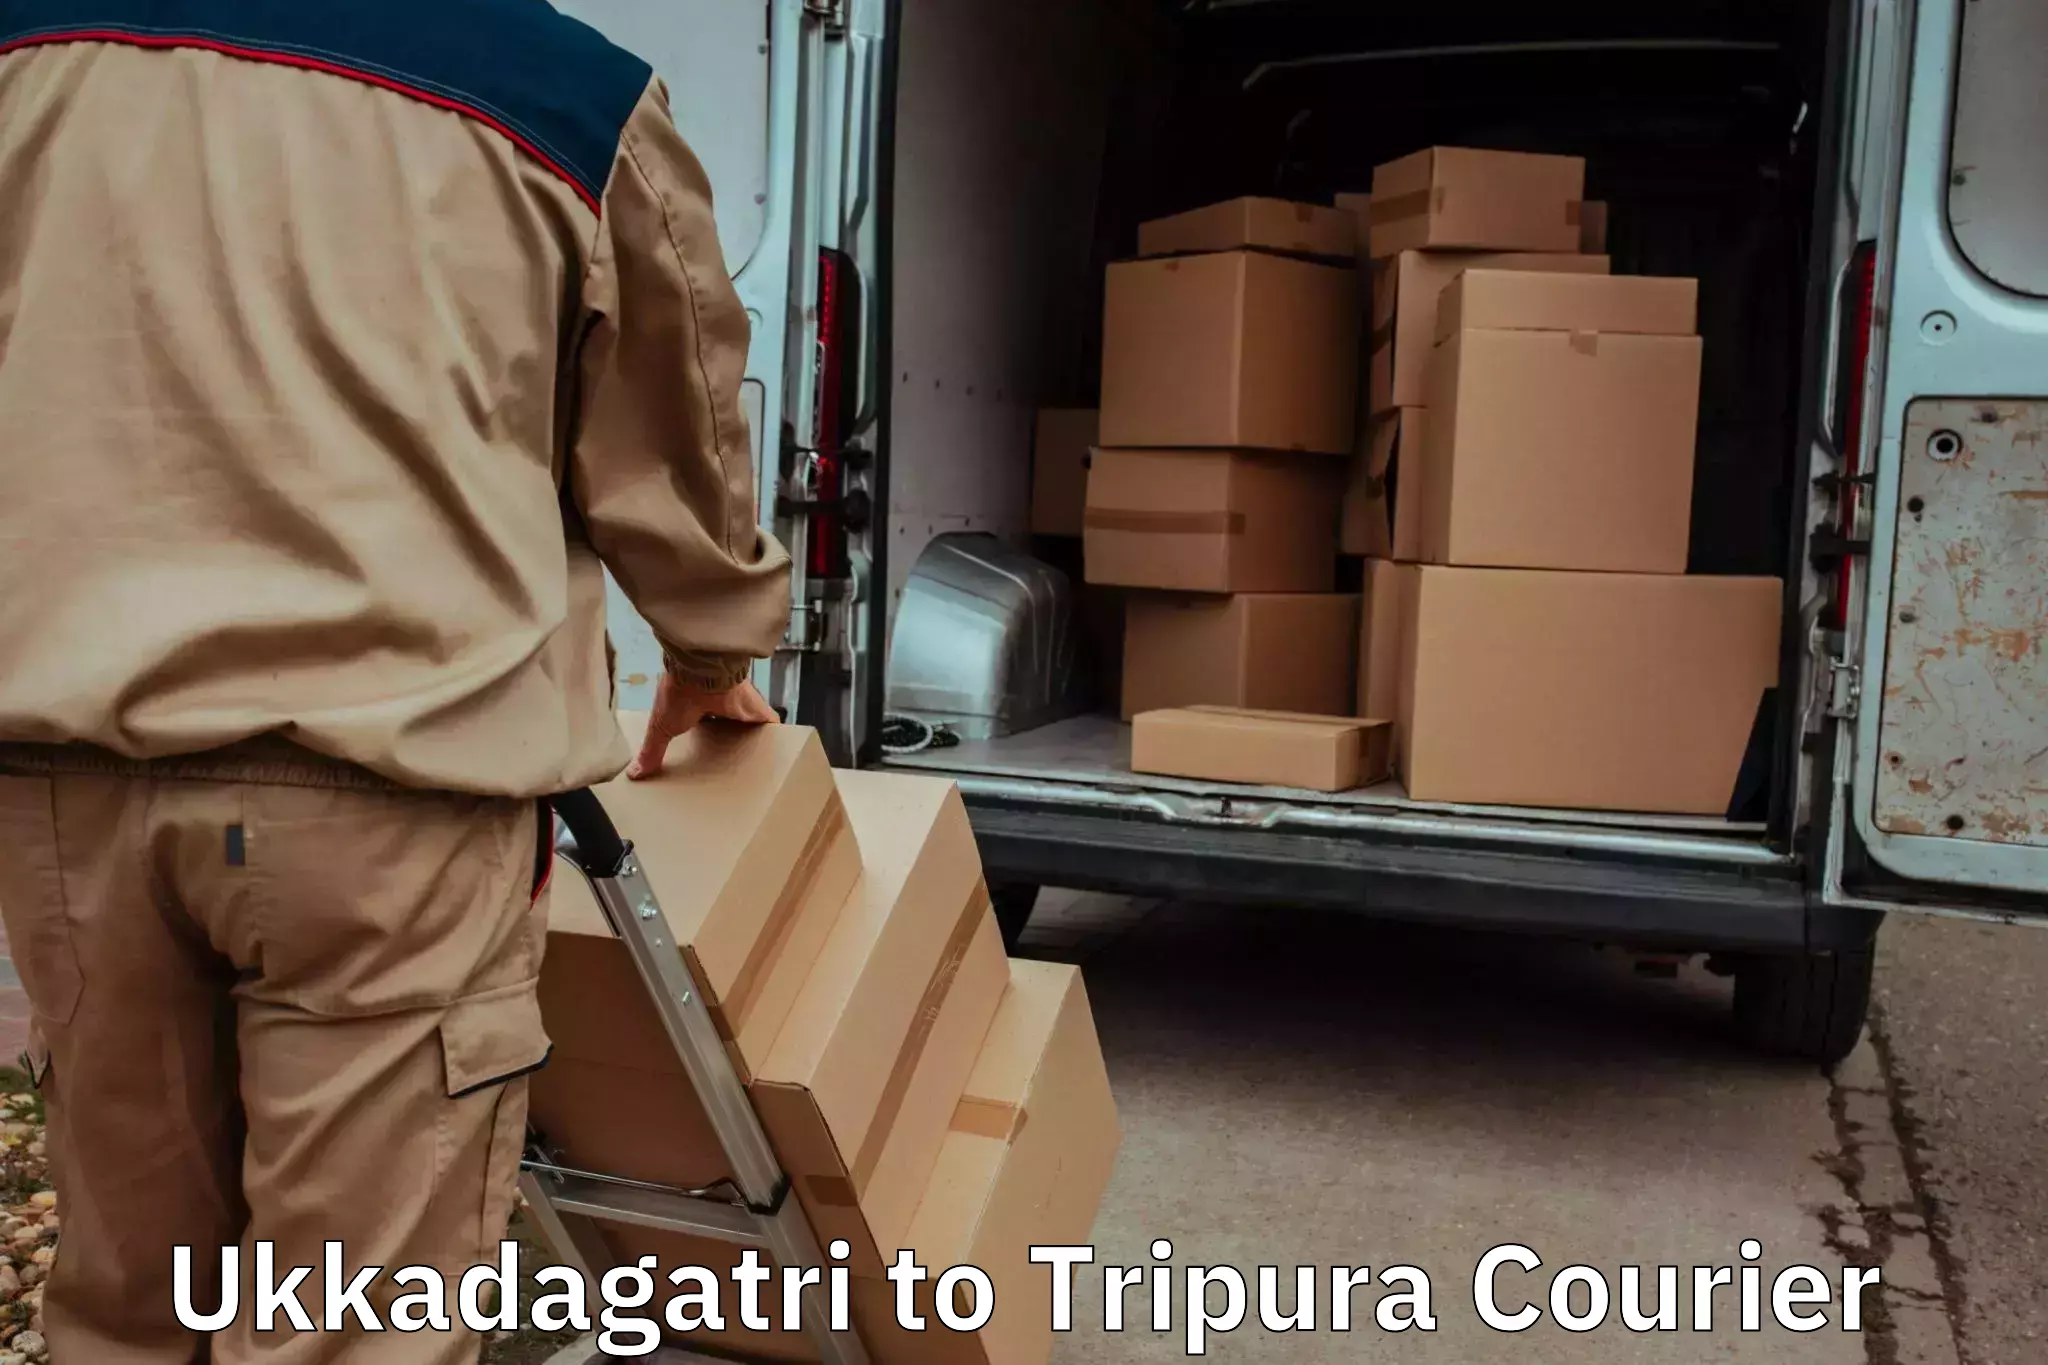 Professional furniture movers Ukkadagatri to Udaipur Tripura